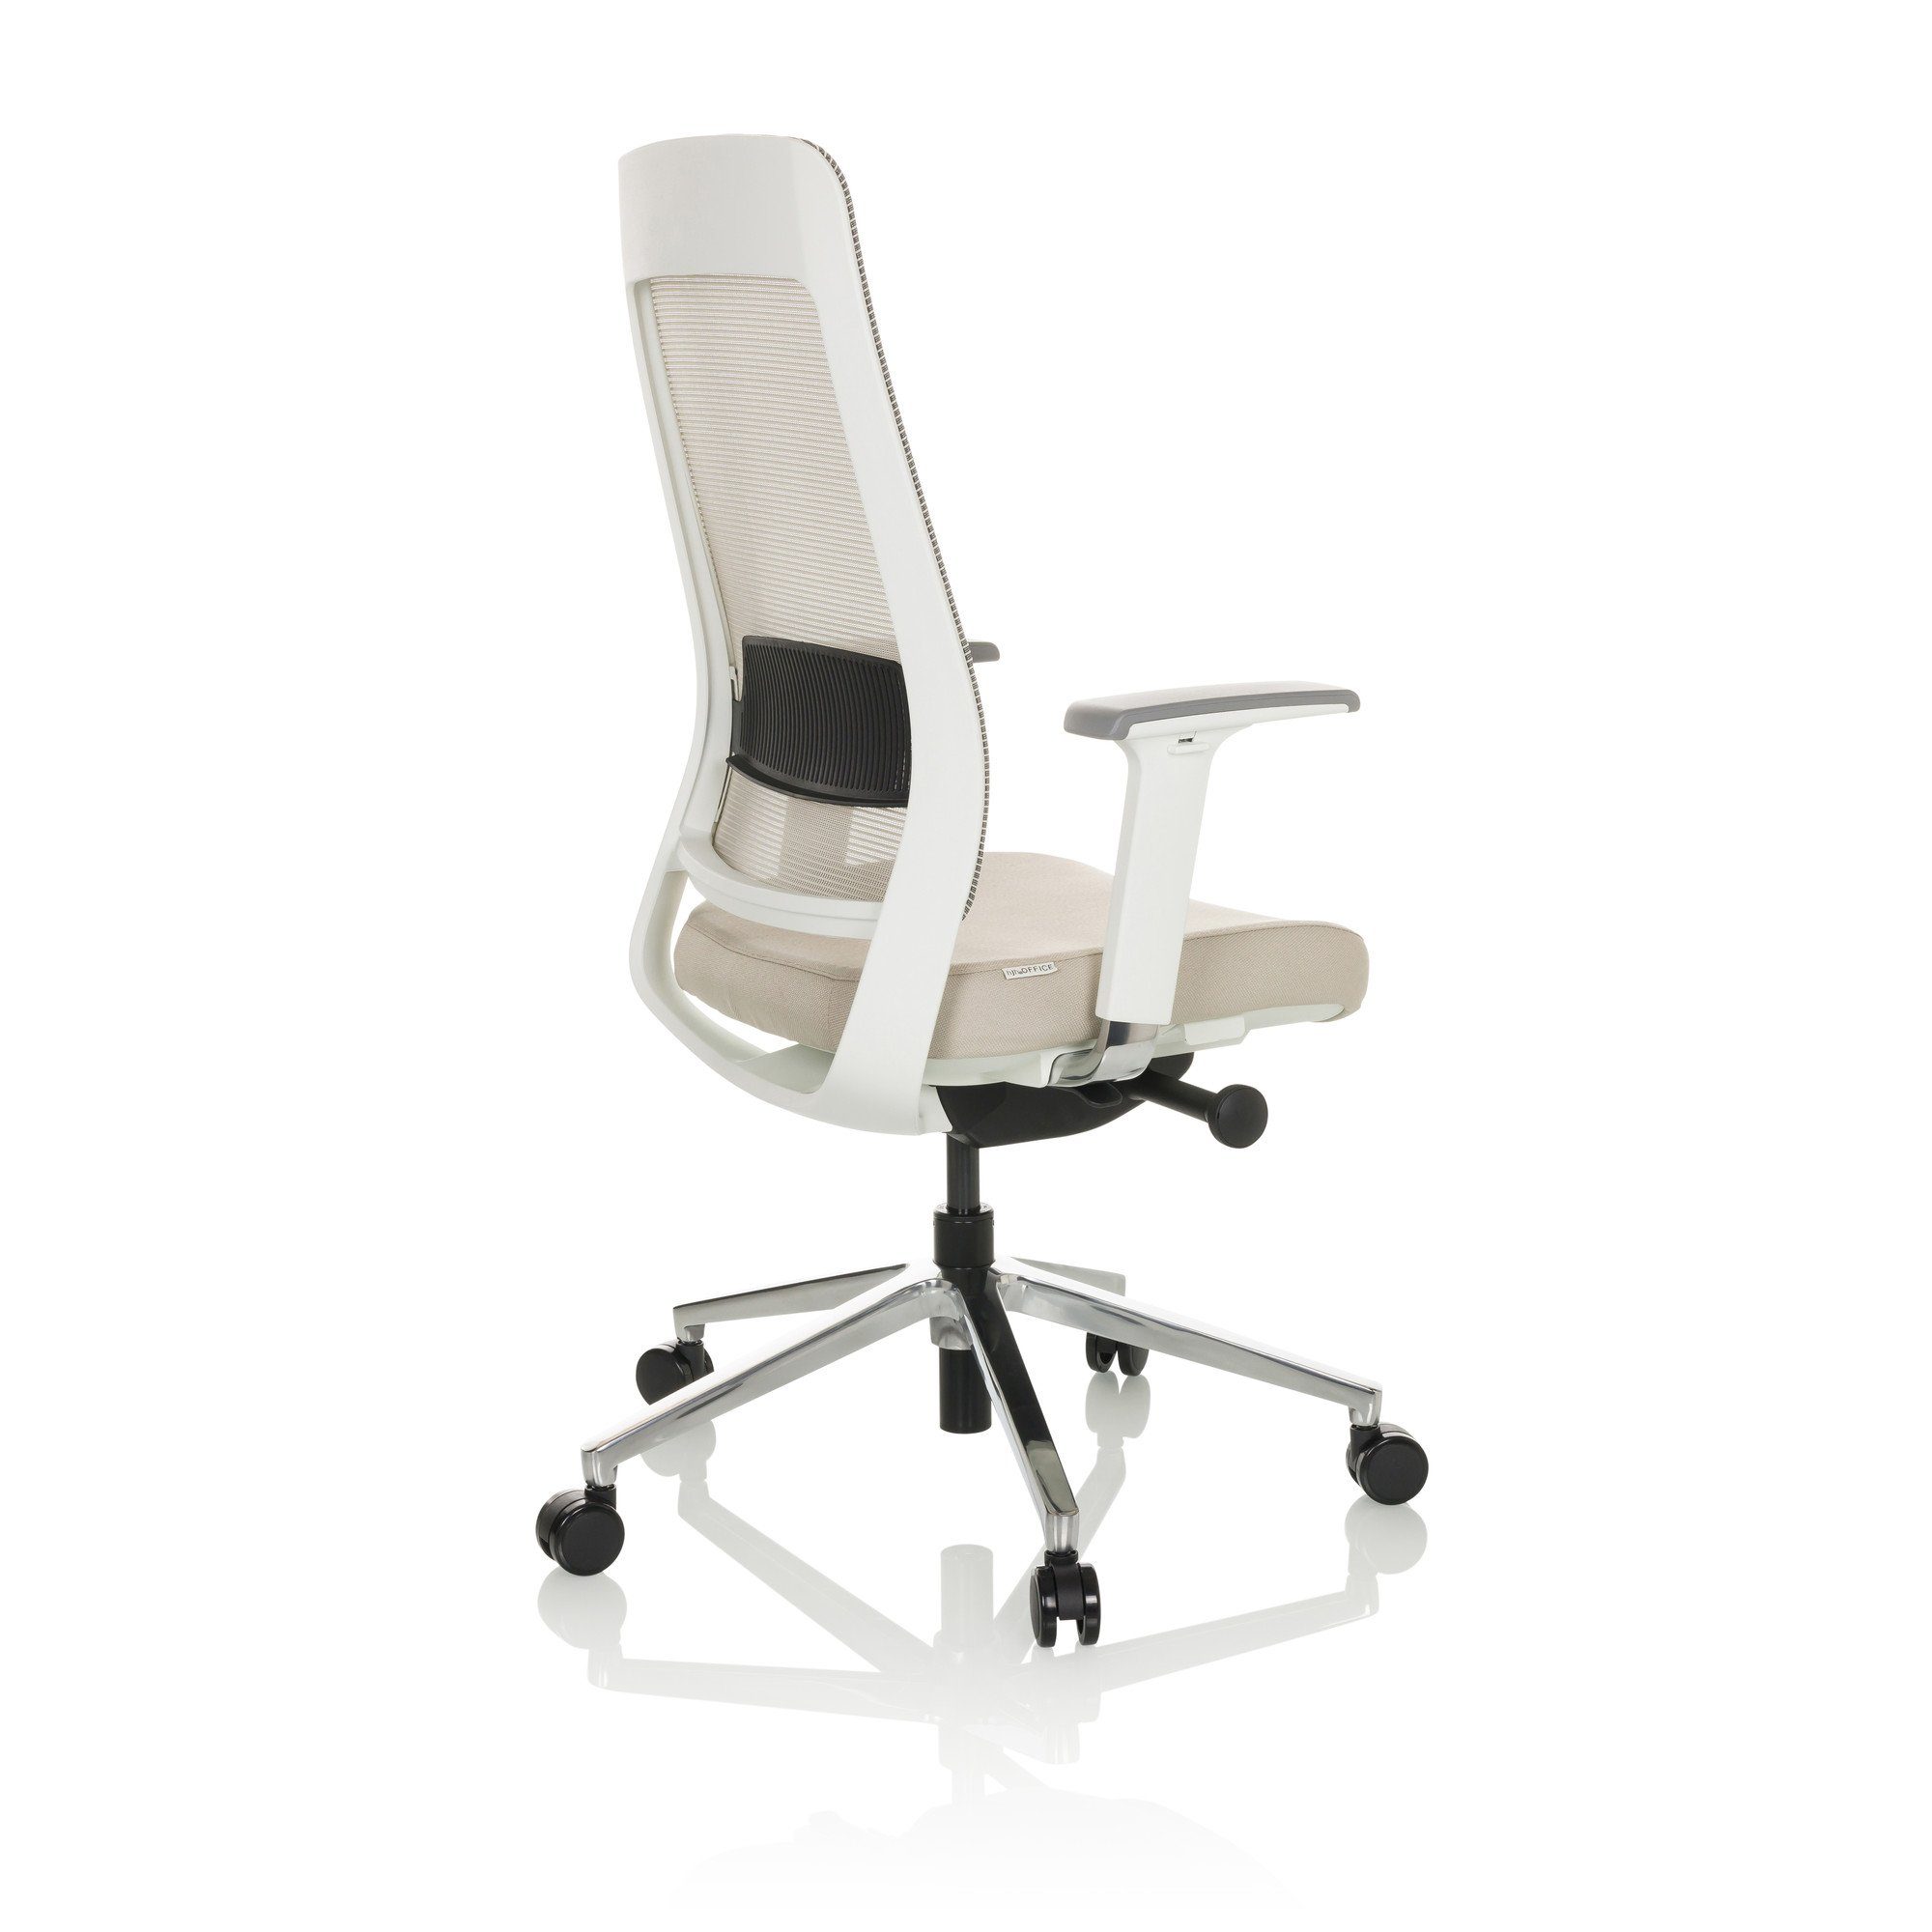 Stoff/Netzstoff CHIARO WHITE hjh (1 Schreibtischstuhl ergonomisch OFFICE Bürostuhl T2 Drehstuhl Beige/Grau St), Profi